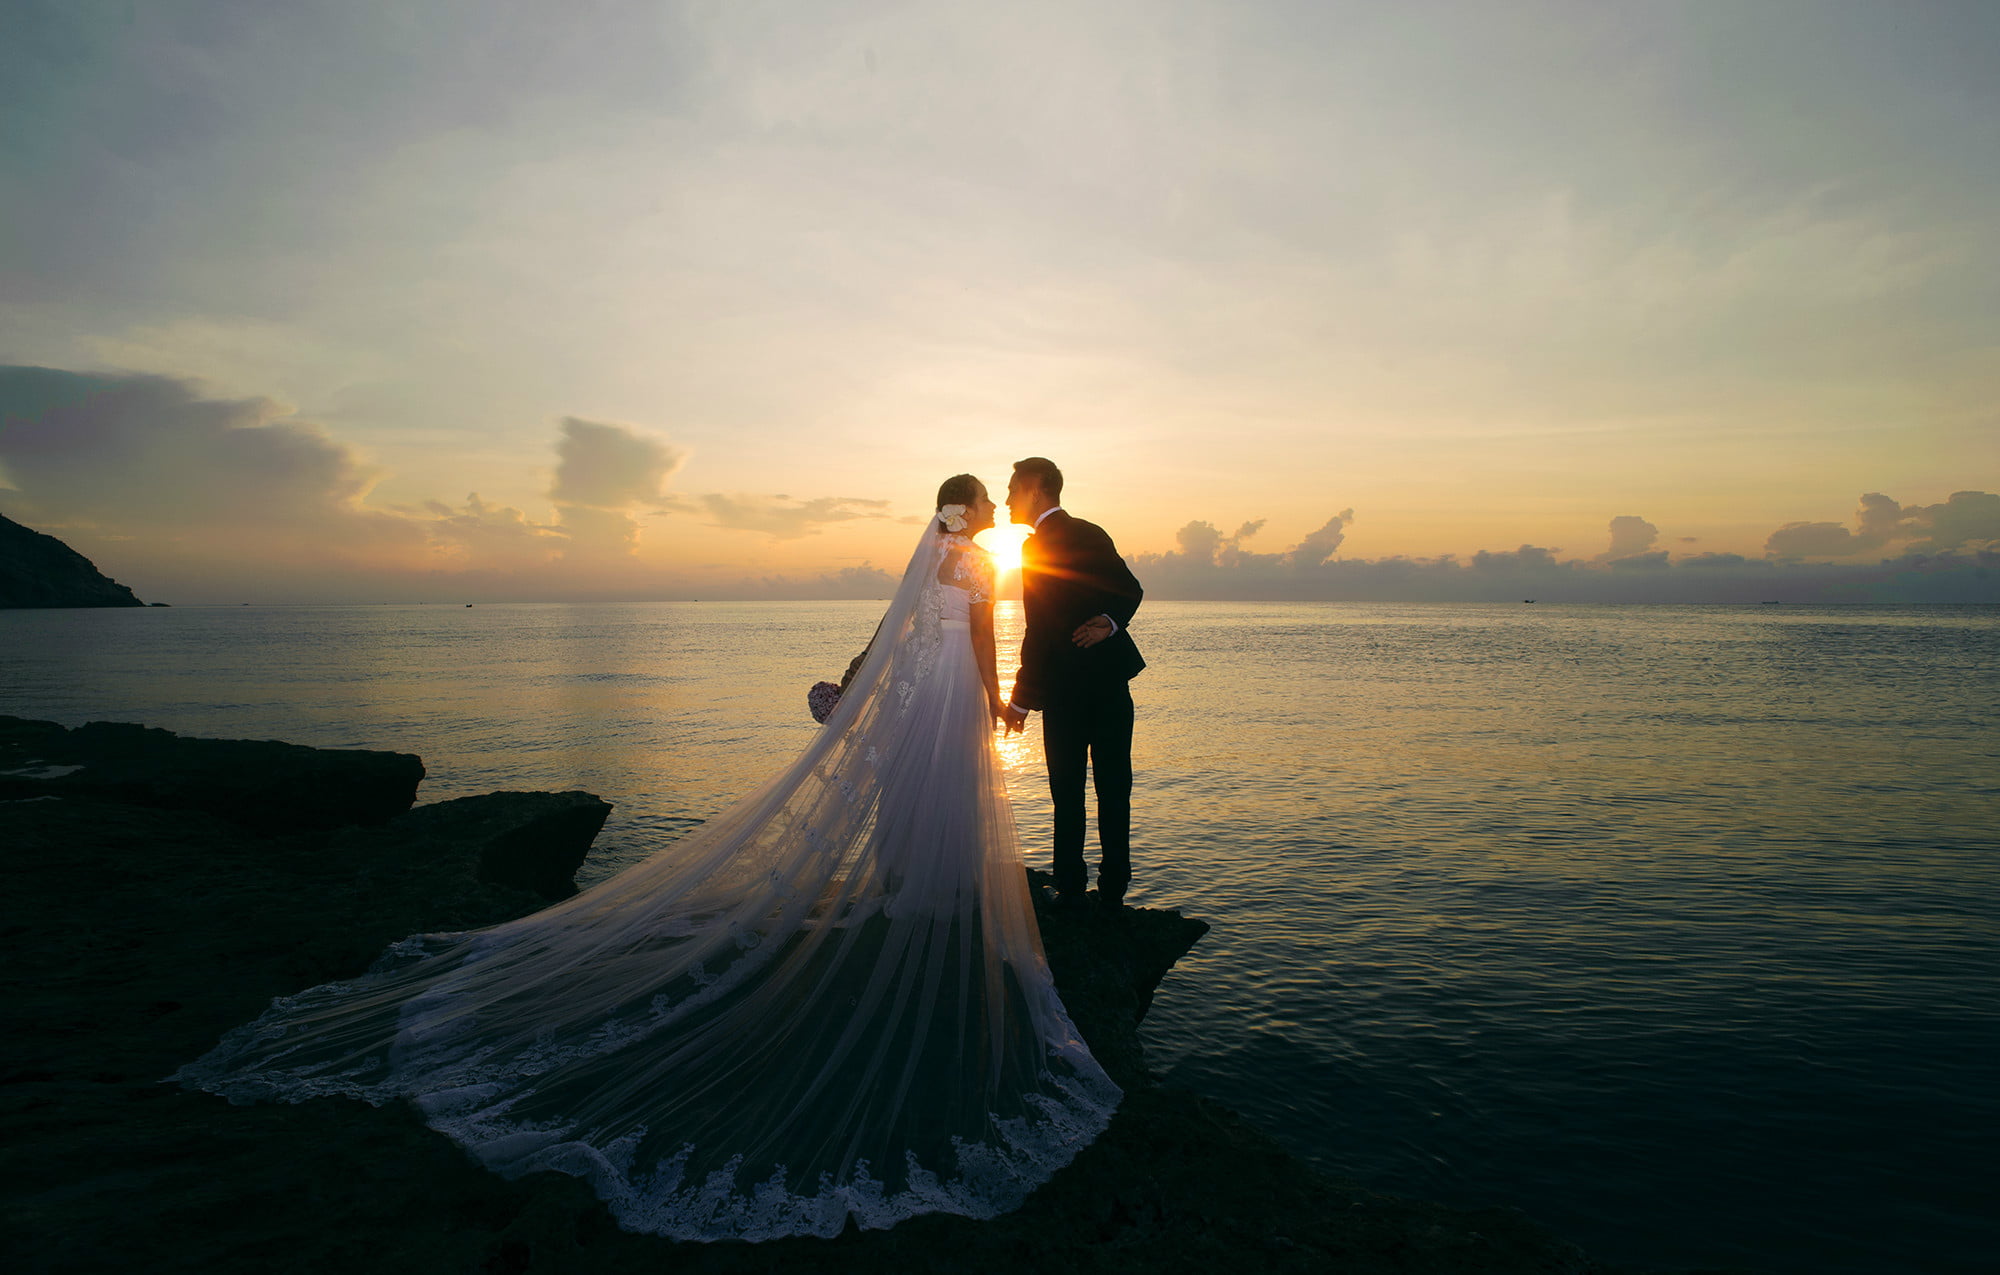 Hình cưới đẹp Nha Trang cực lãng mạn